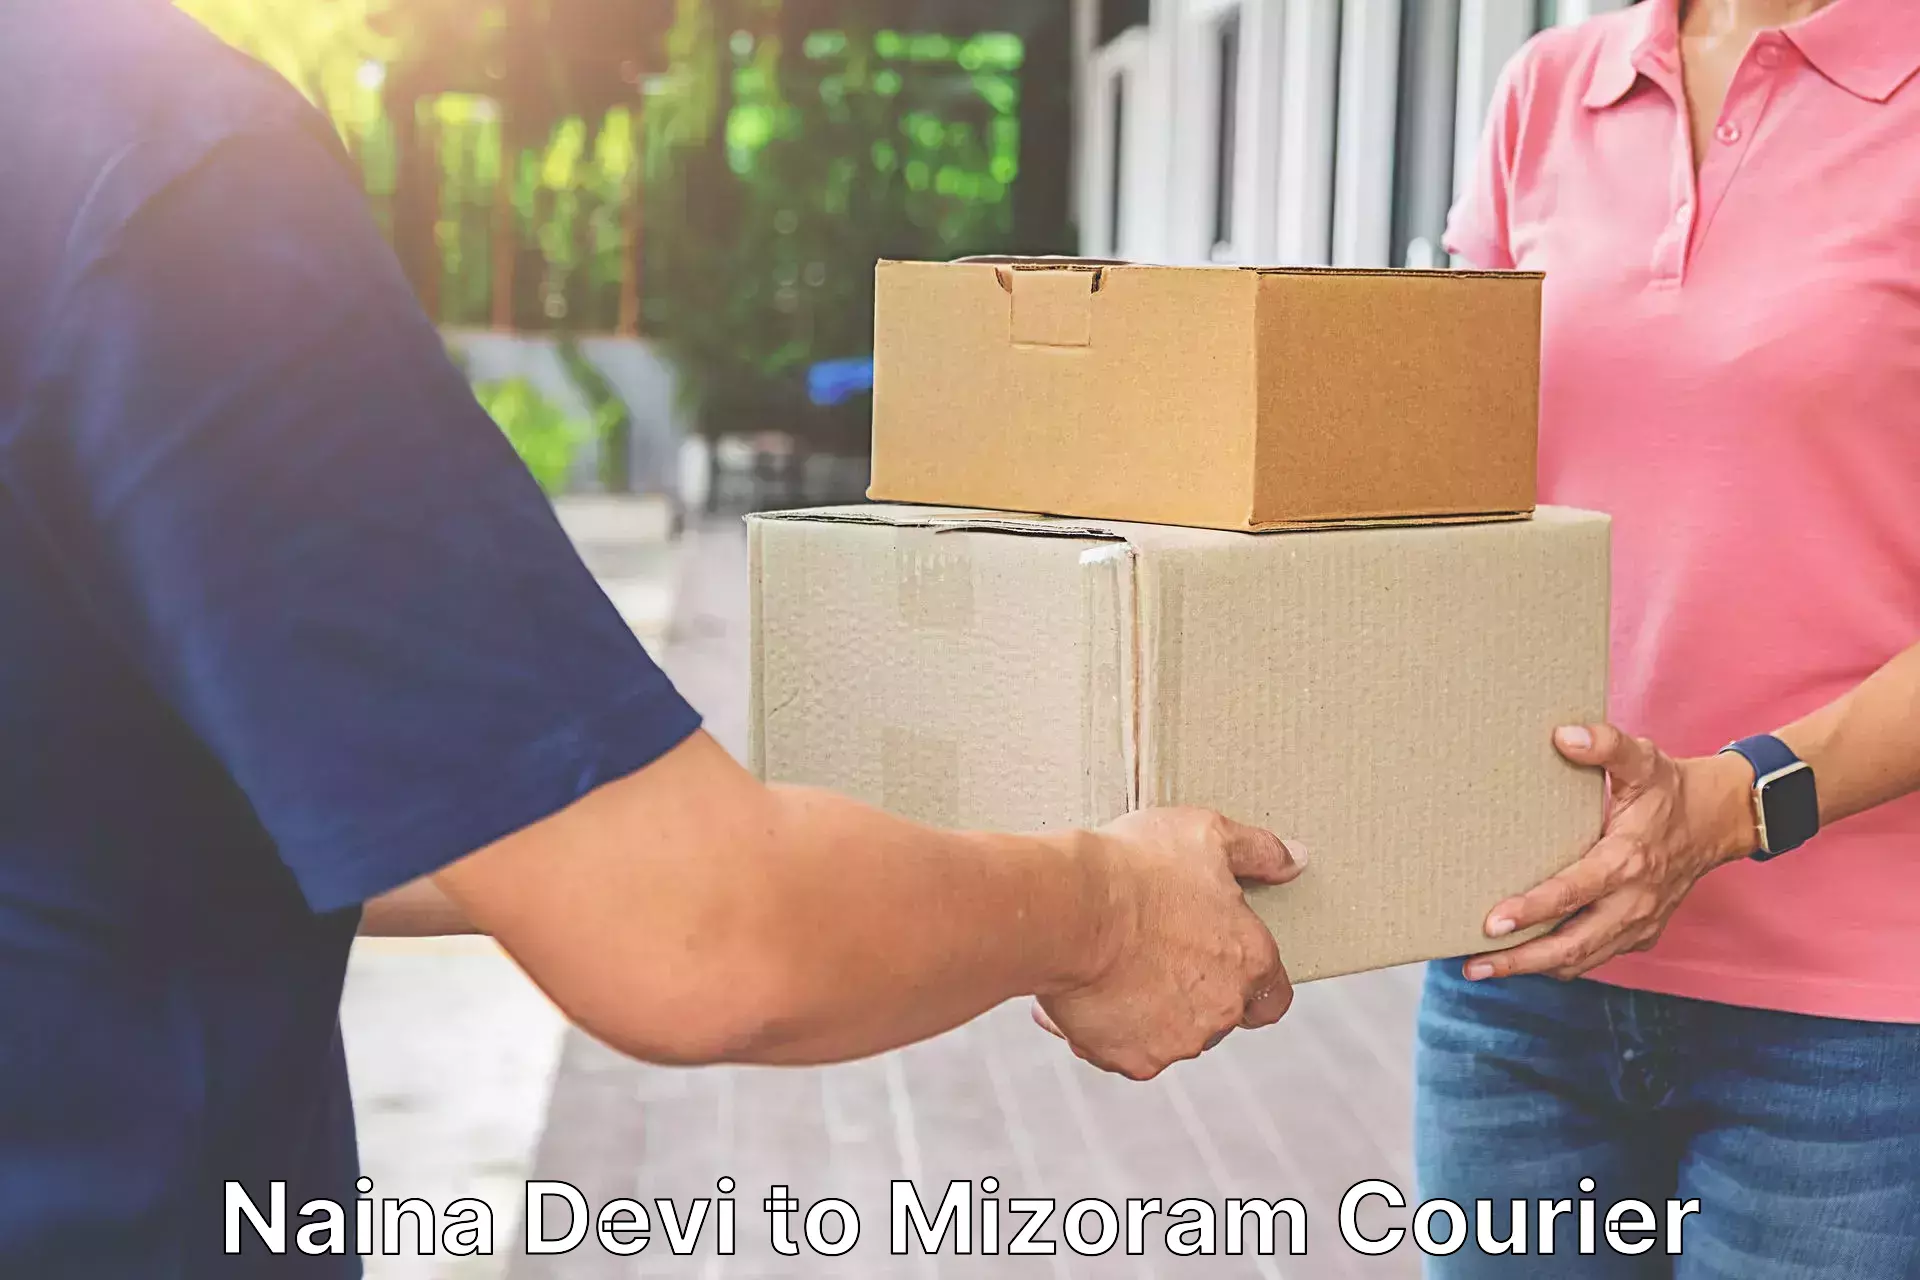 High-capacity parcel service Naina Devi to Mizoram